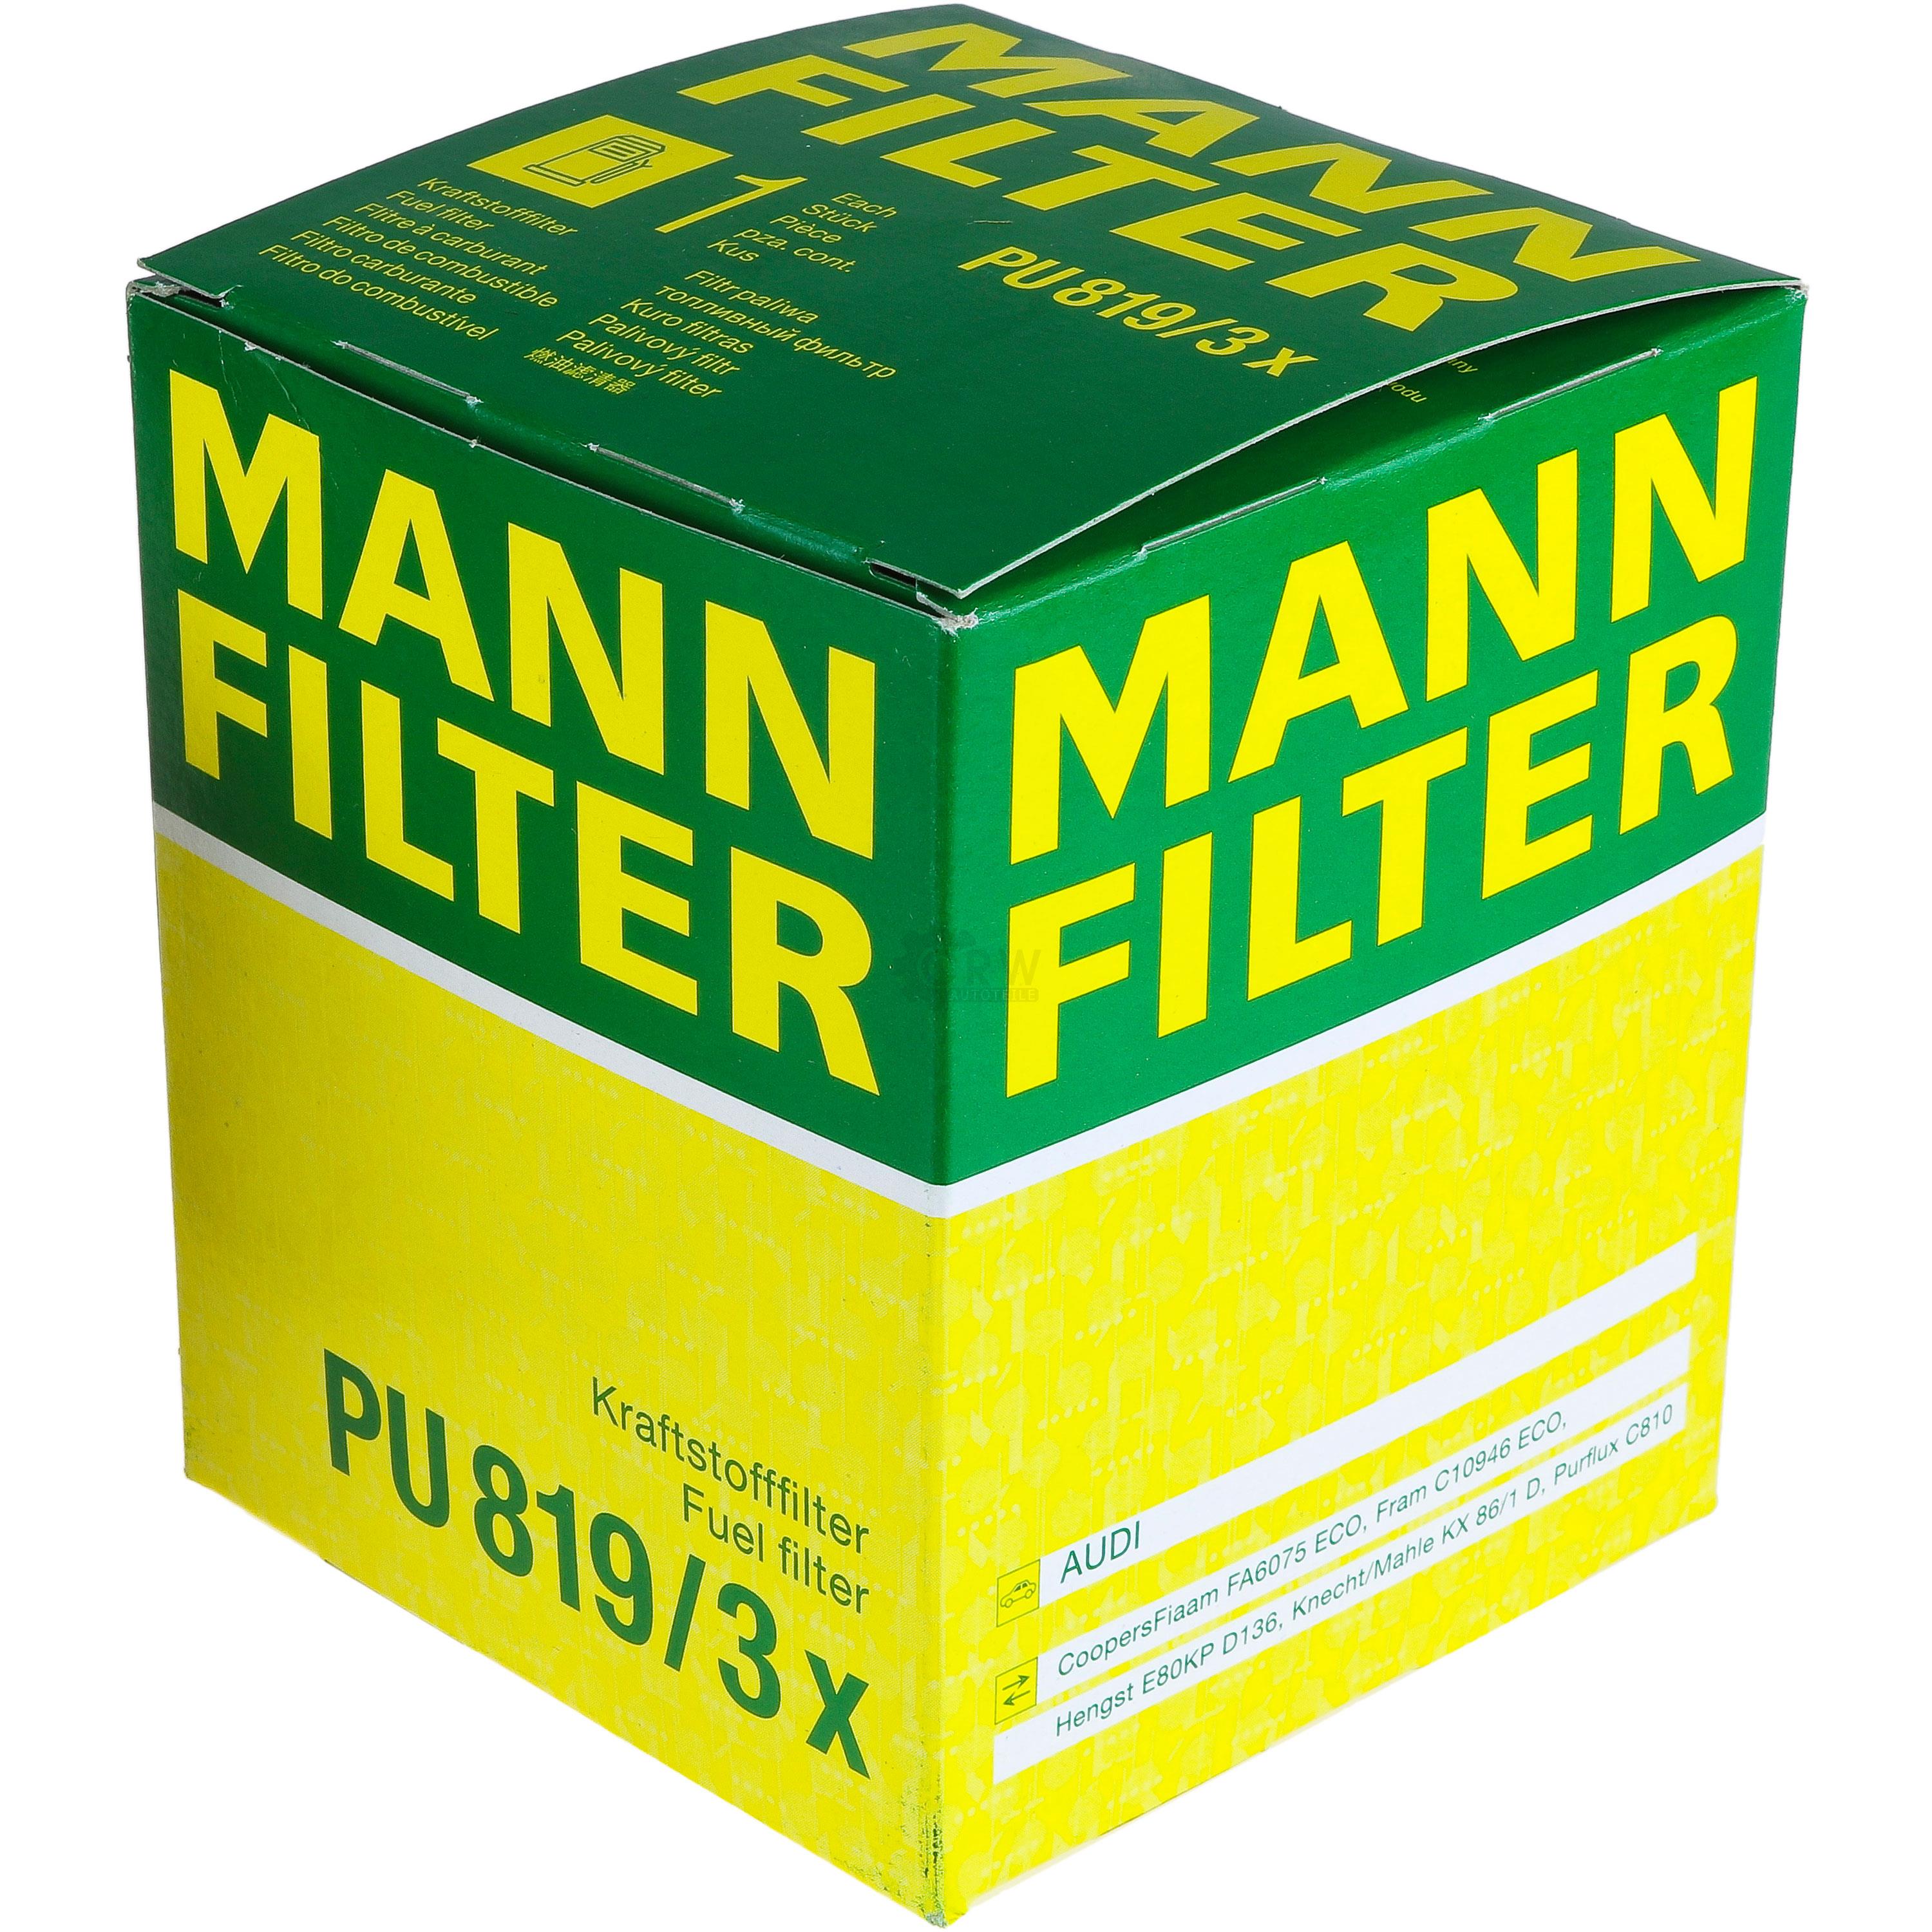 MANN-FILTER Kraftstofffilter PU 819/3 x Fuel Filter